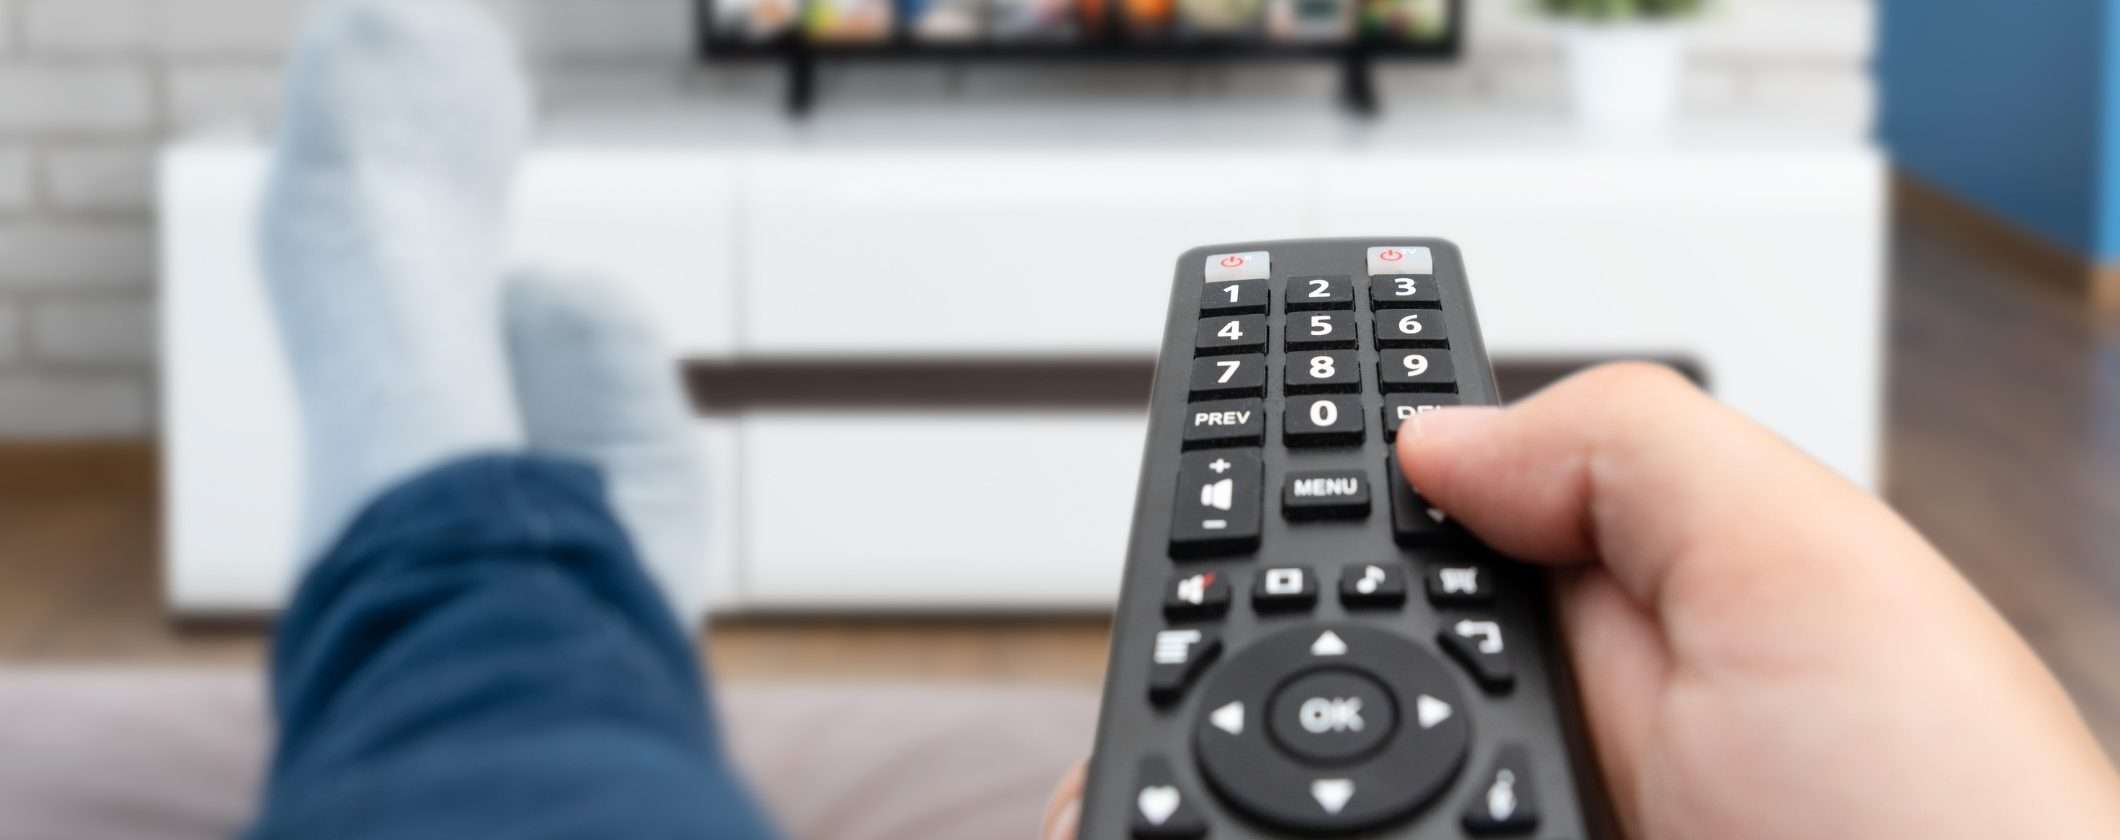 Digitale Terrestre 2023: come ricevere tutti i canali TV